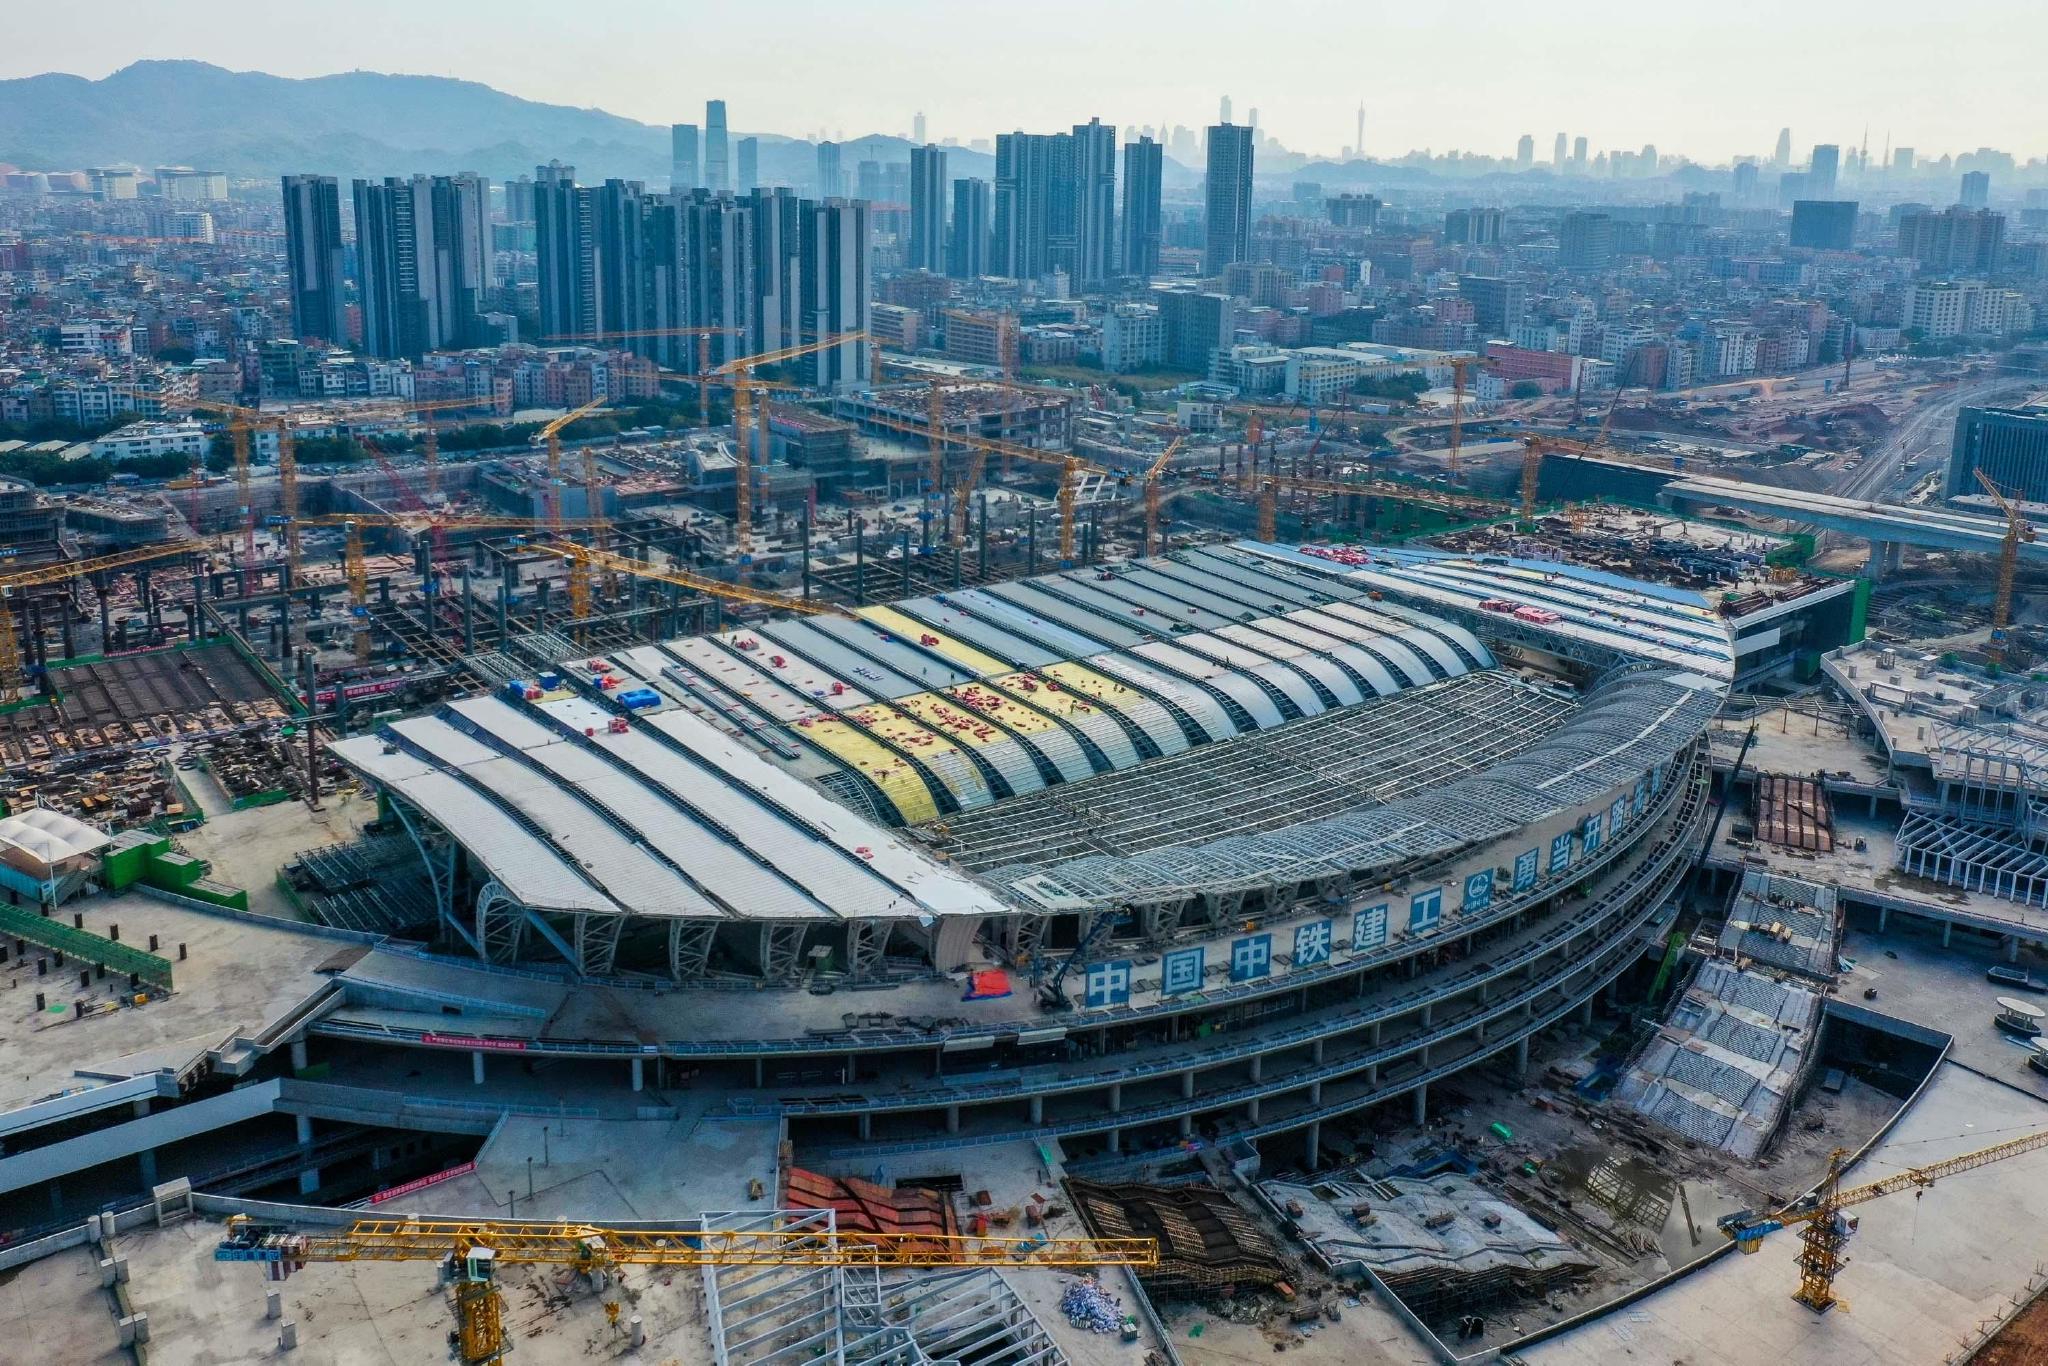 ▲广州白云火车站项目一期金属屋面和二期主体结构建设现场（无人机照片，2022年12月27日）。图/新华社